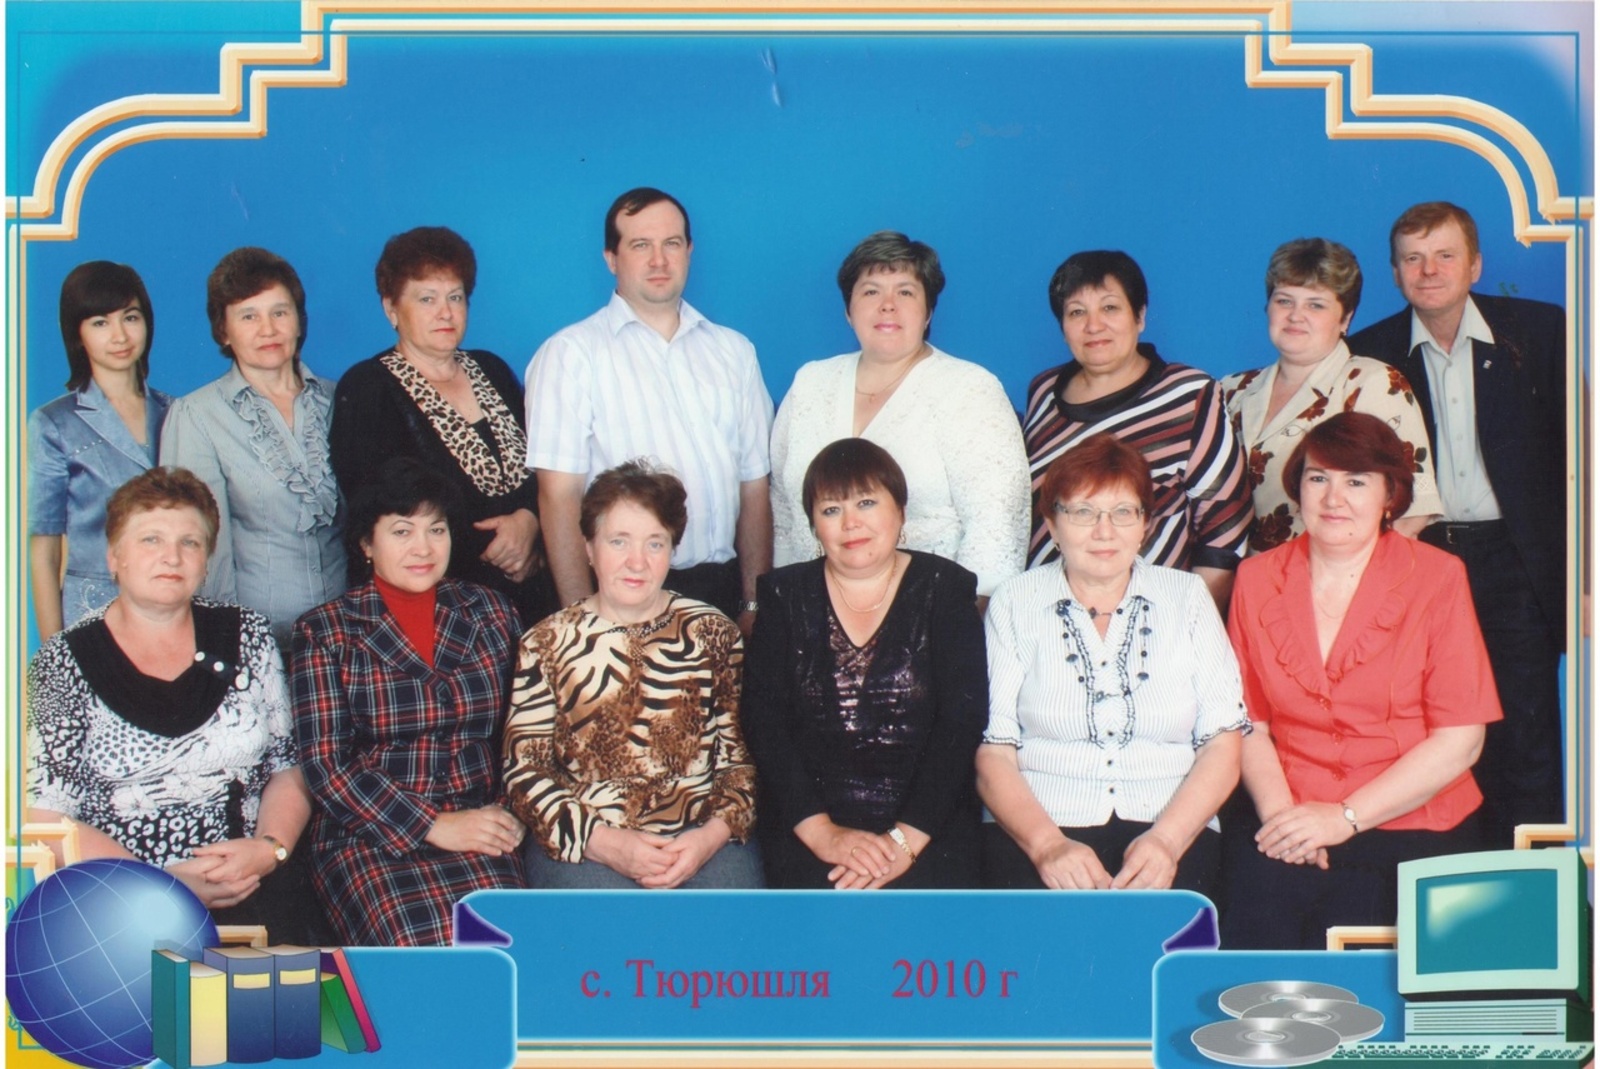 ▲ Коллектив учителей школы с. Тюрюшля. 2010 год. Л.В.Бирюкова слева третья в верхнем ряду.